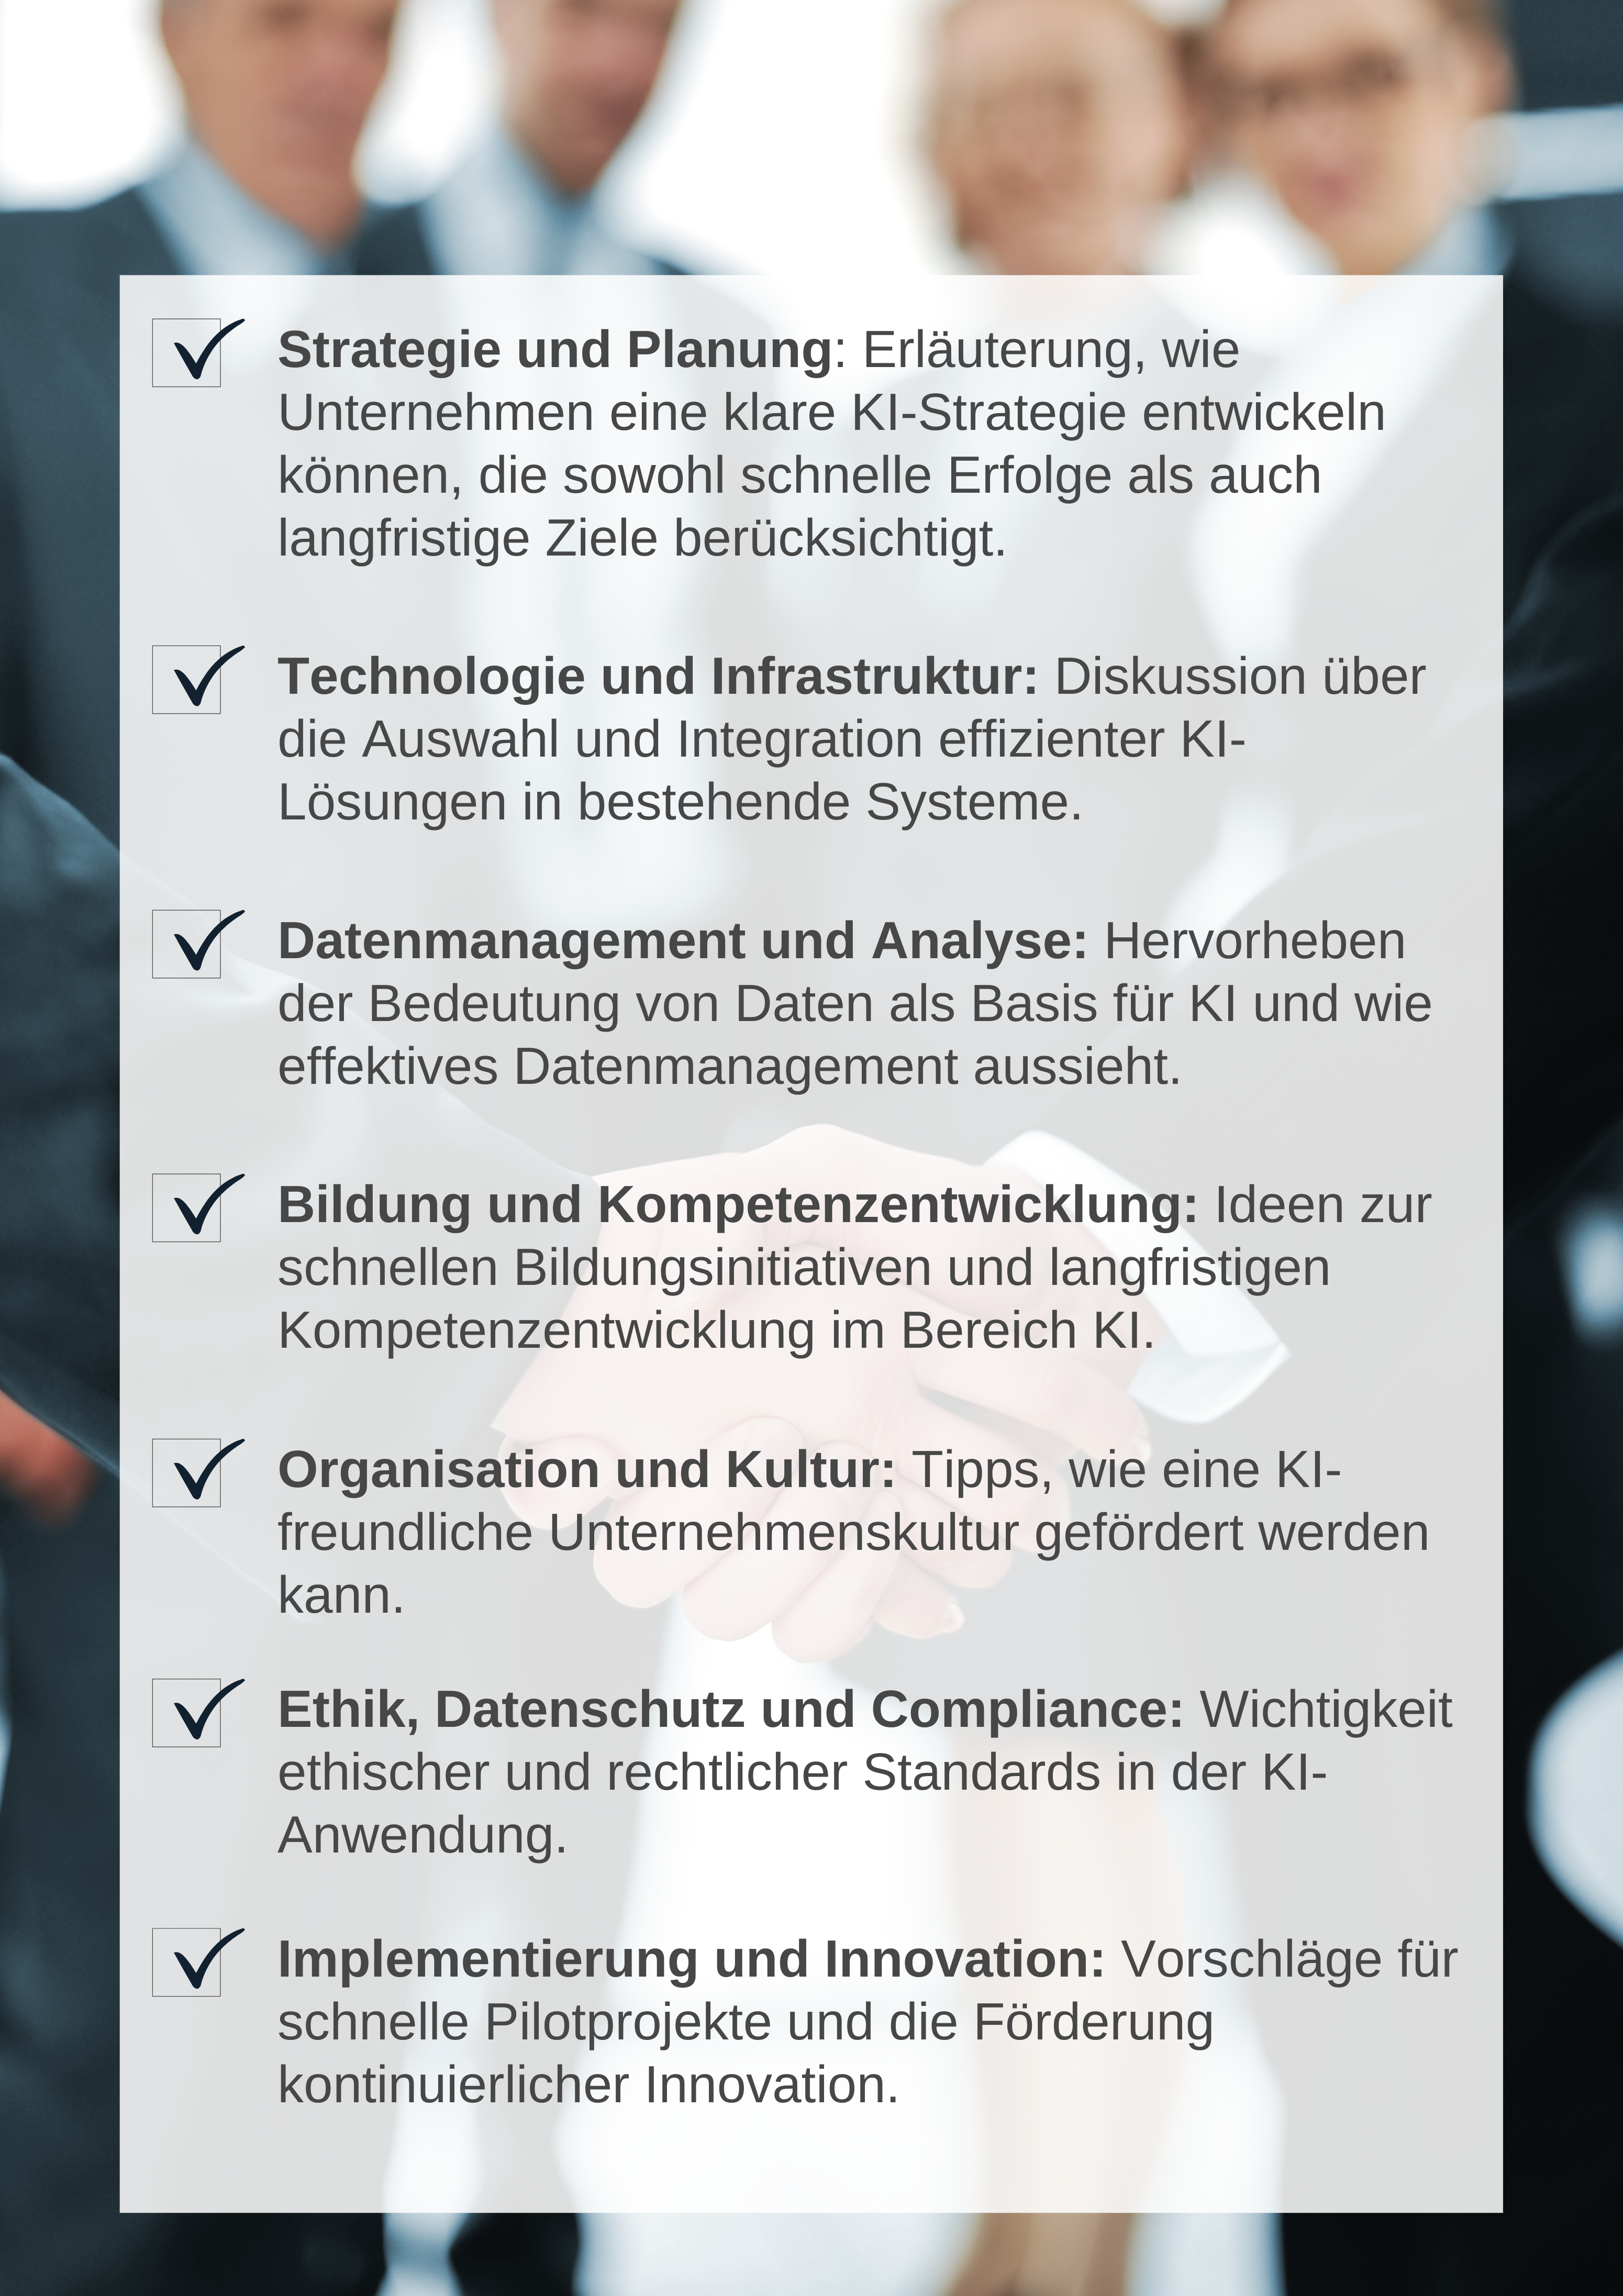 KI im Unternehmen richtig nutzen | Dr. Hubertus Porschen GmbH